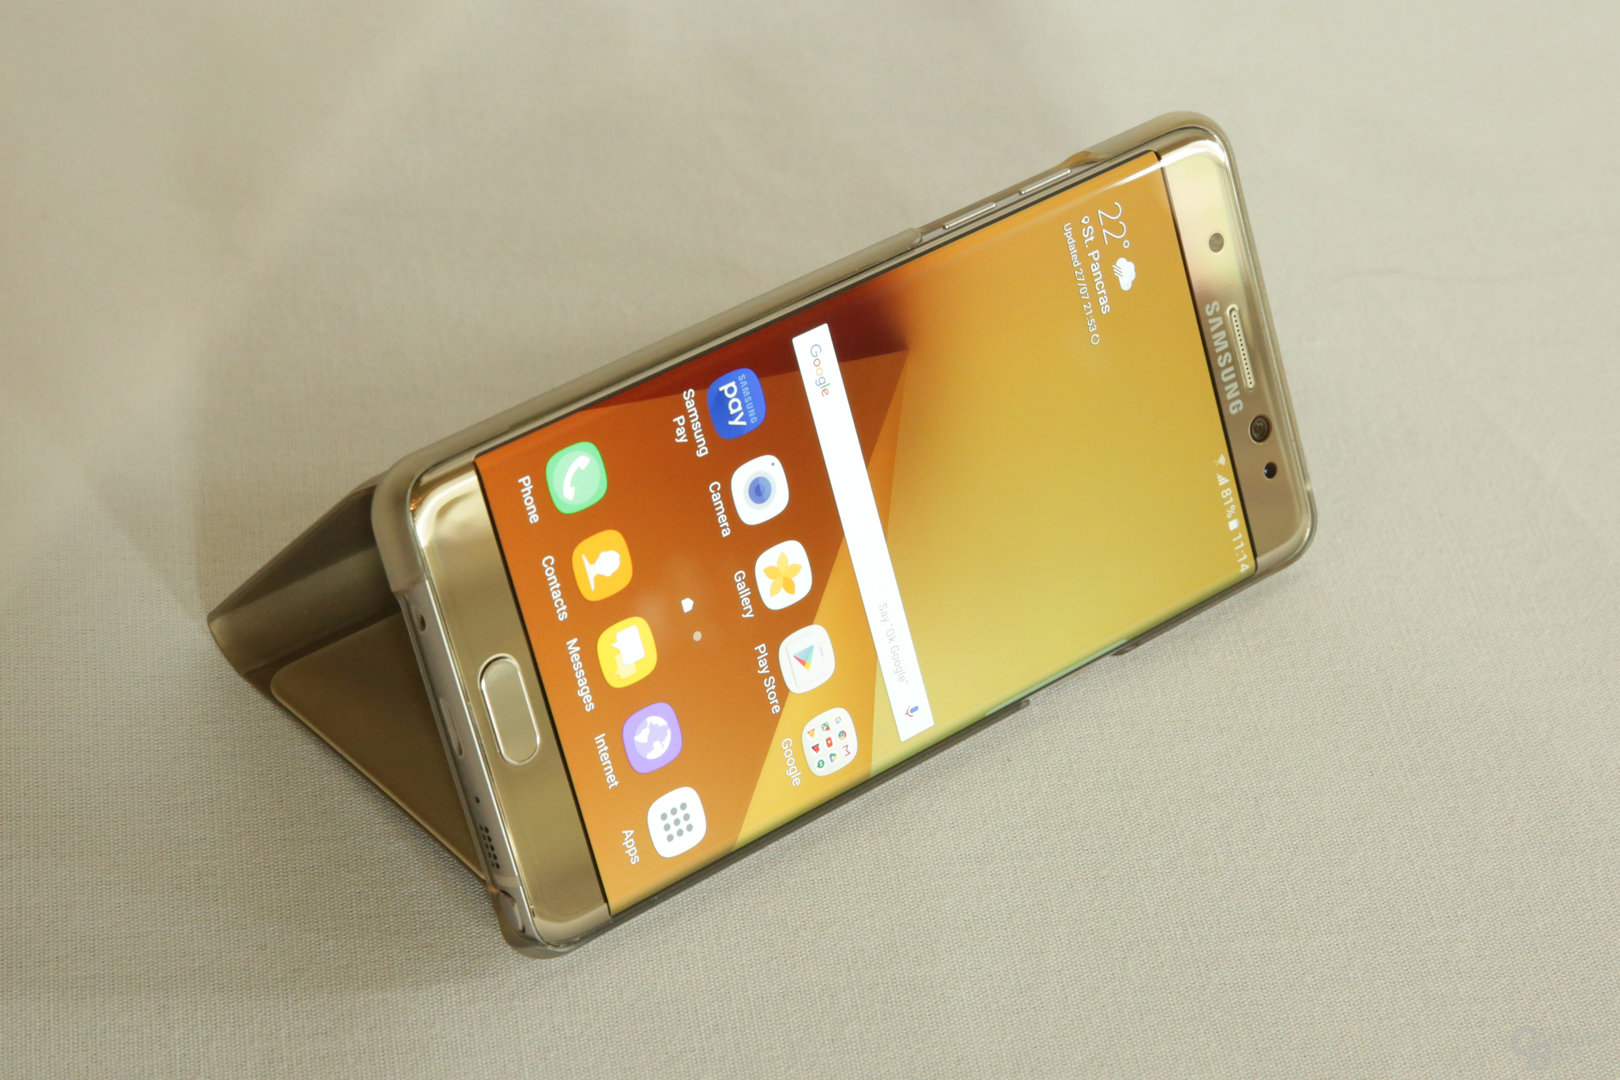 Samsung Galaxy Note 7 ausprobiert